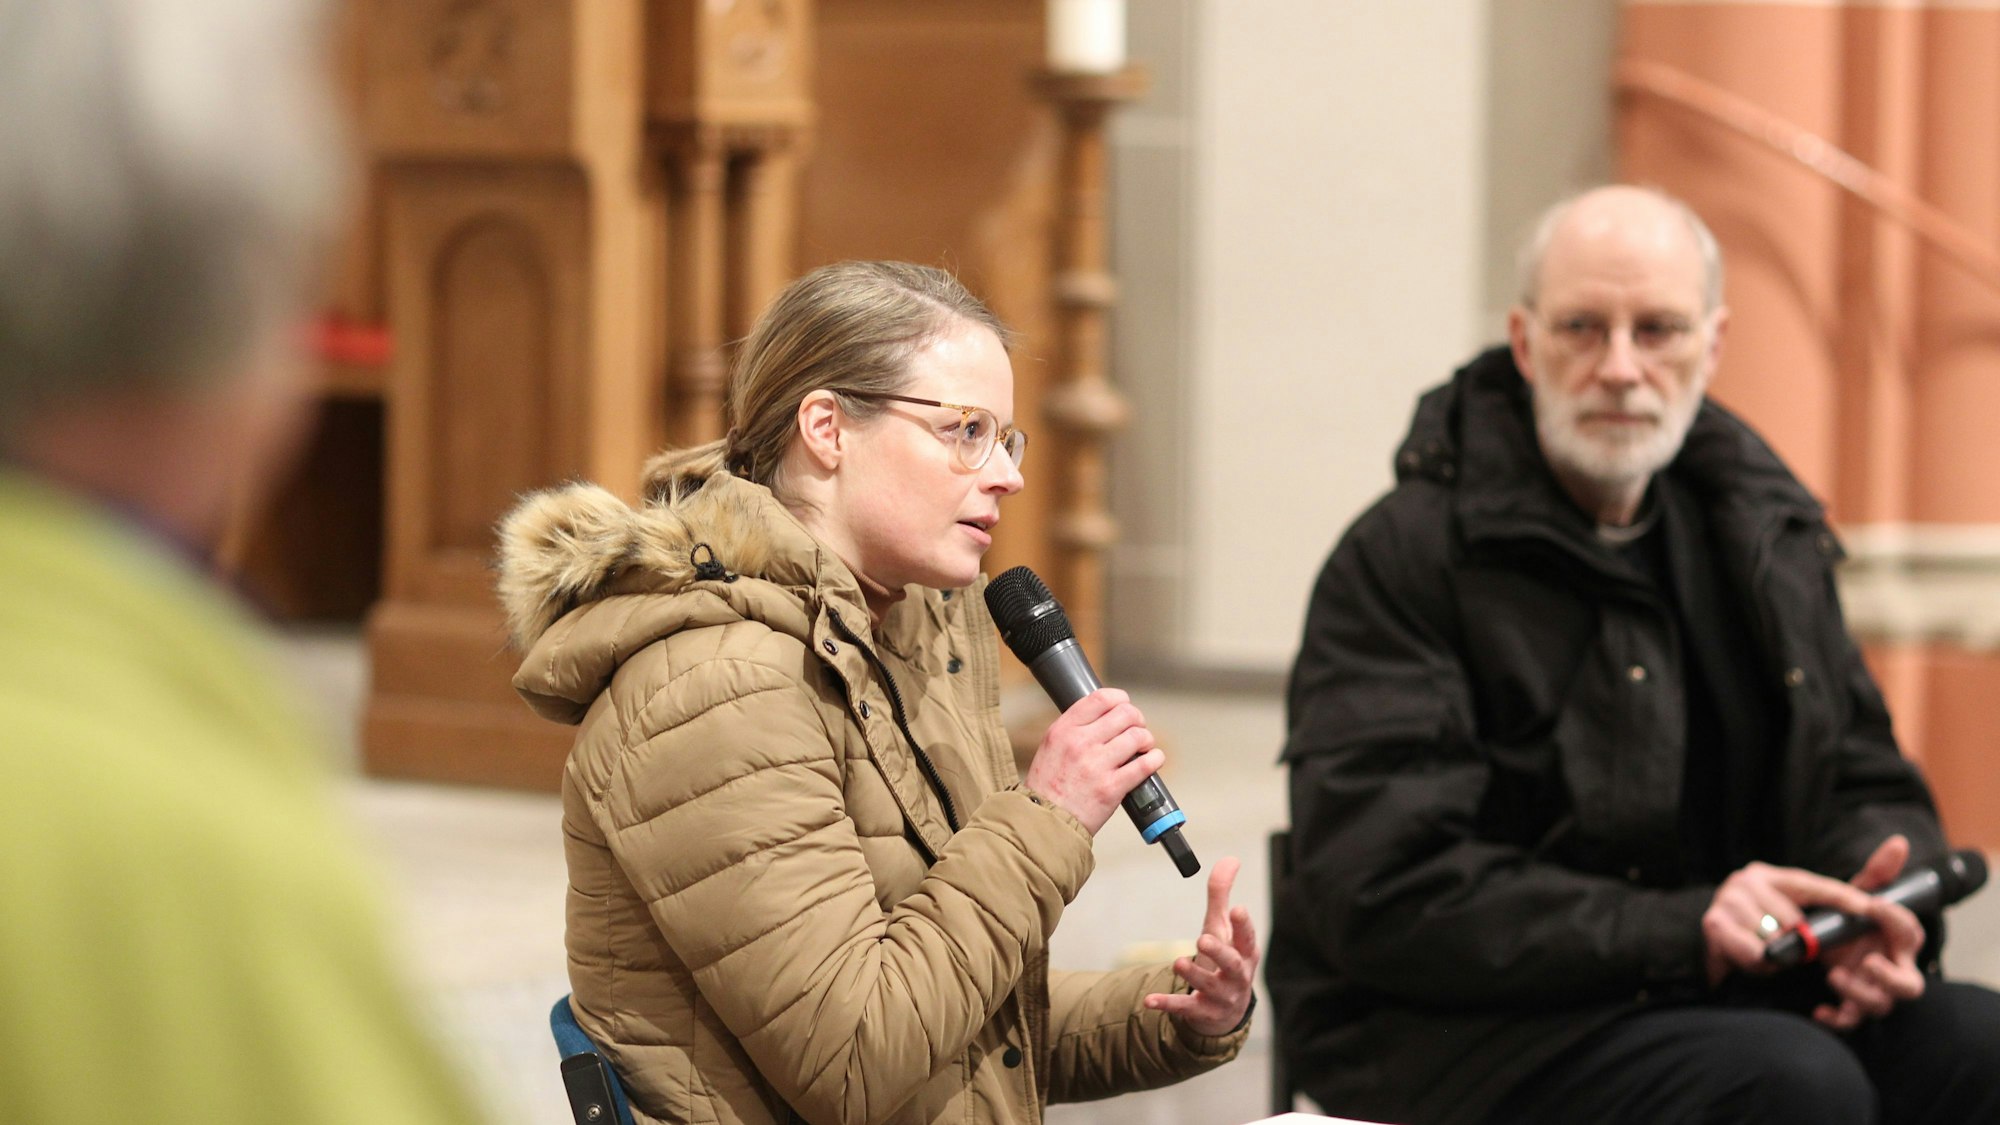 Eine blonde Frau mit Pferdeschwanz und Brille in einem Steppmantel spricht in ein Mikrofon, neben ihr sitzt ein Geistlicher mit grauen Haaren und Bart.